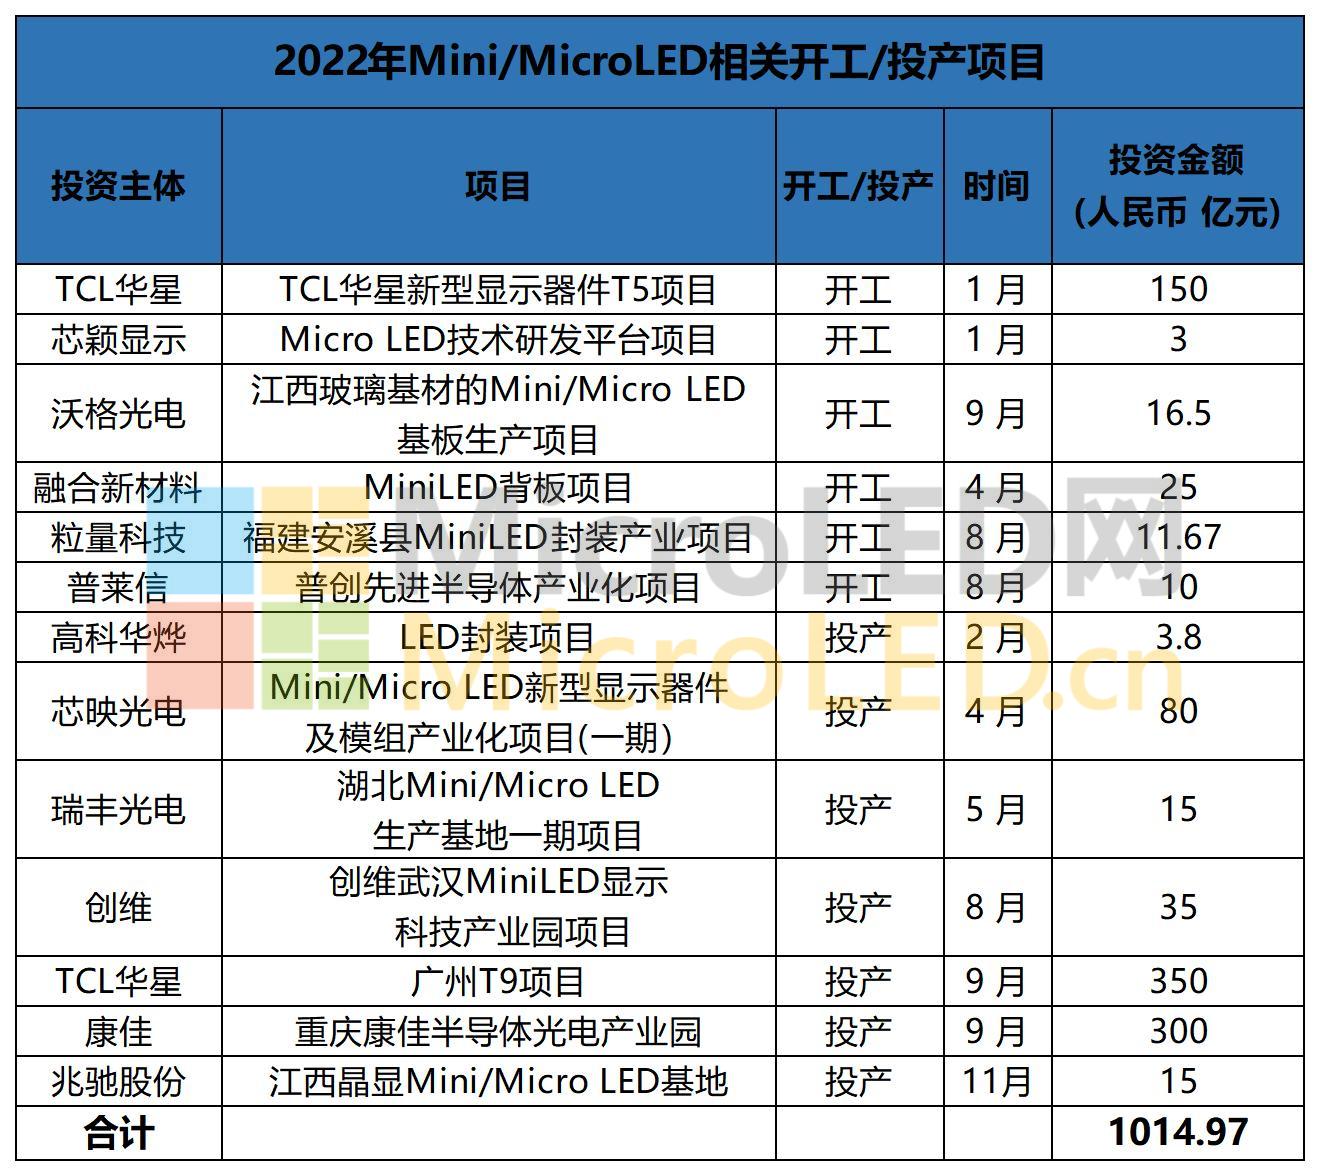 2022年MiniMicroLED相关开工投产项目_A1E16.jpg